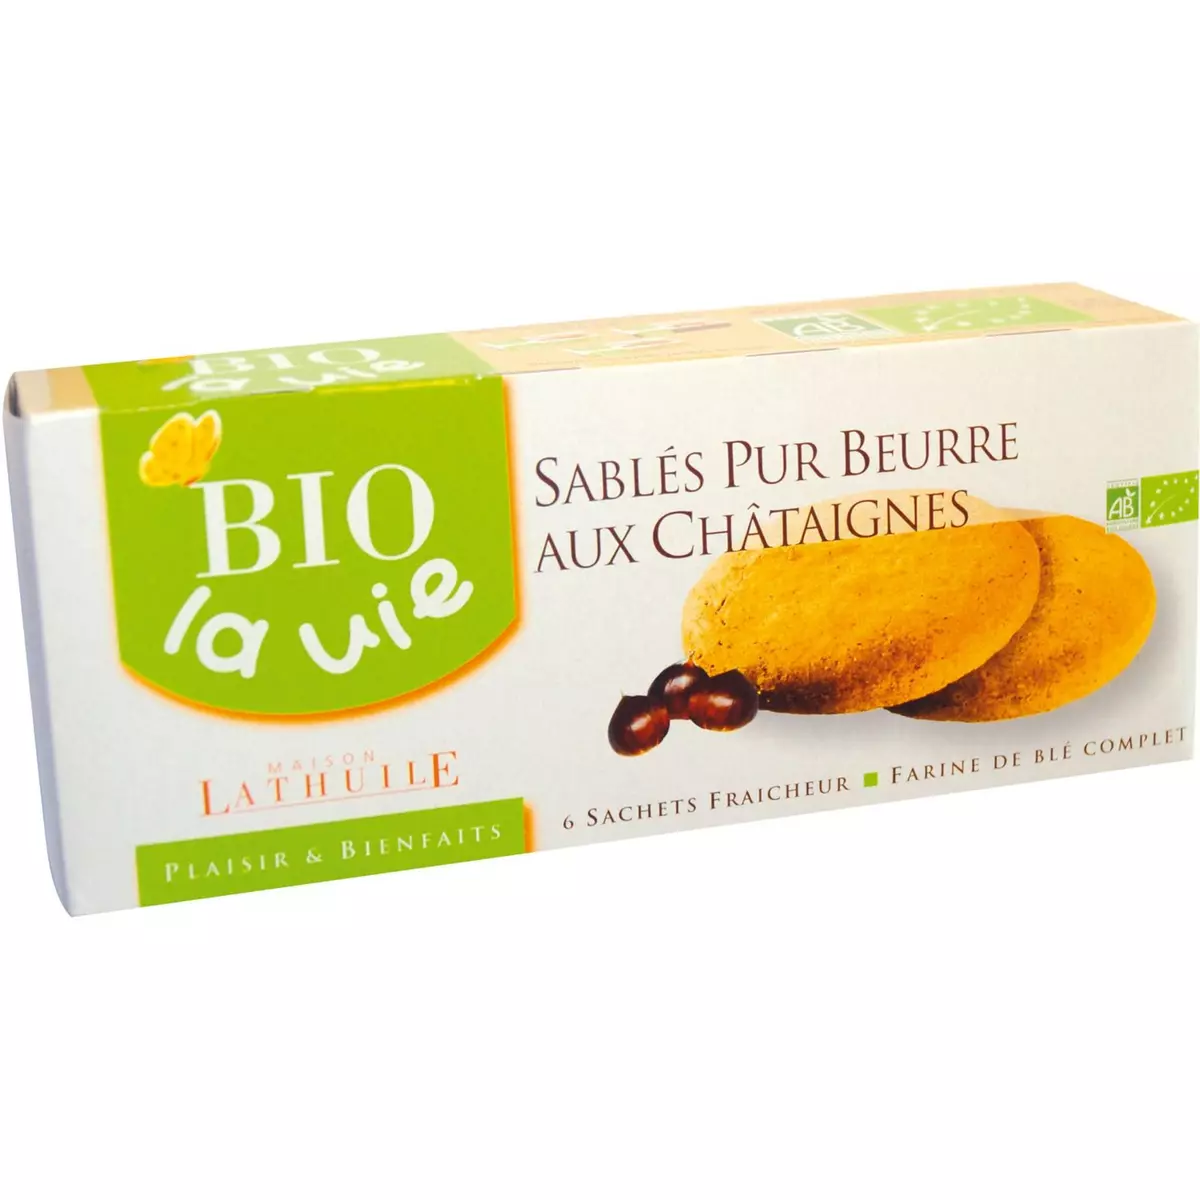 BIO LA VIE Biscuits sablés pur beurre aux châtaignes bio 6 sachets 120g